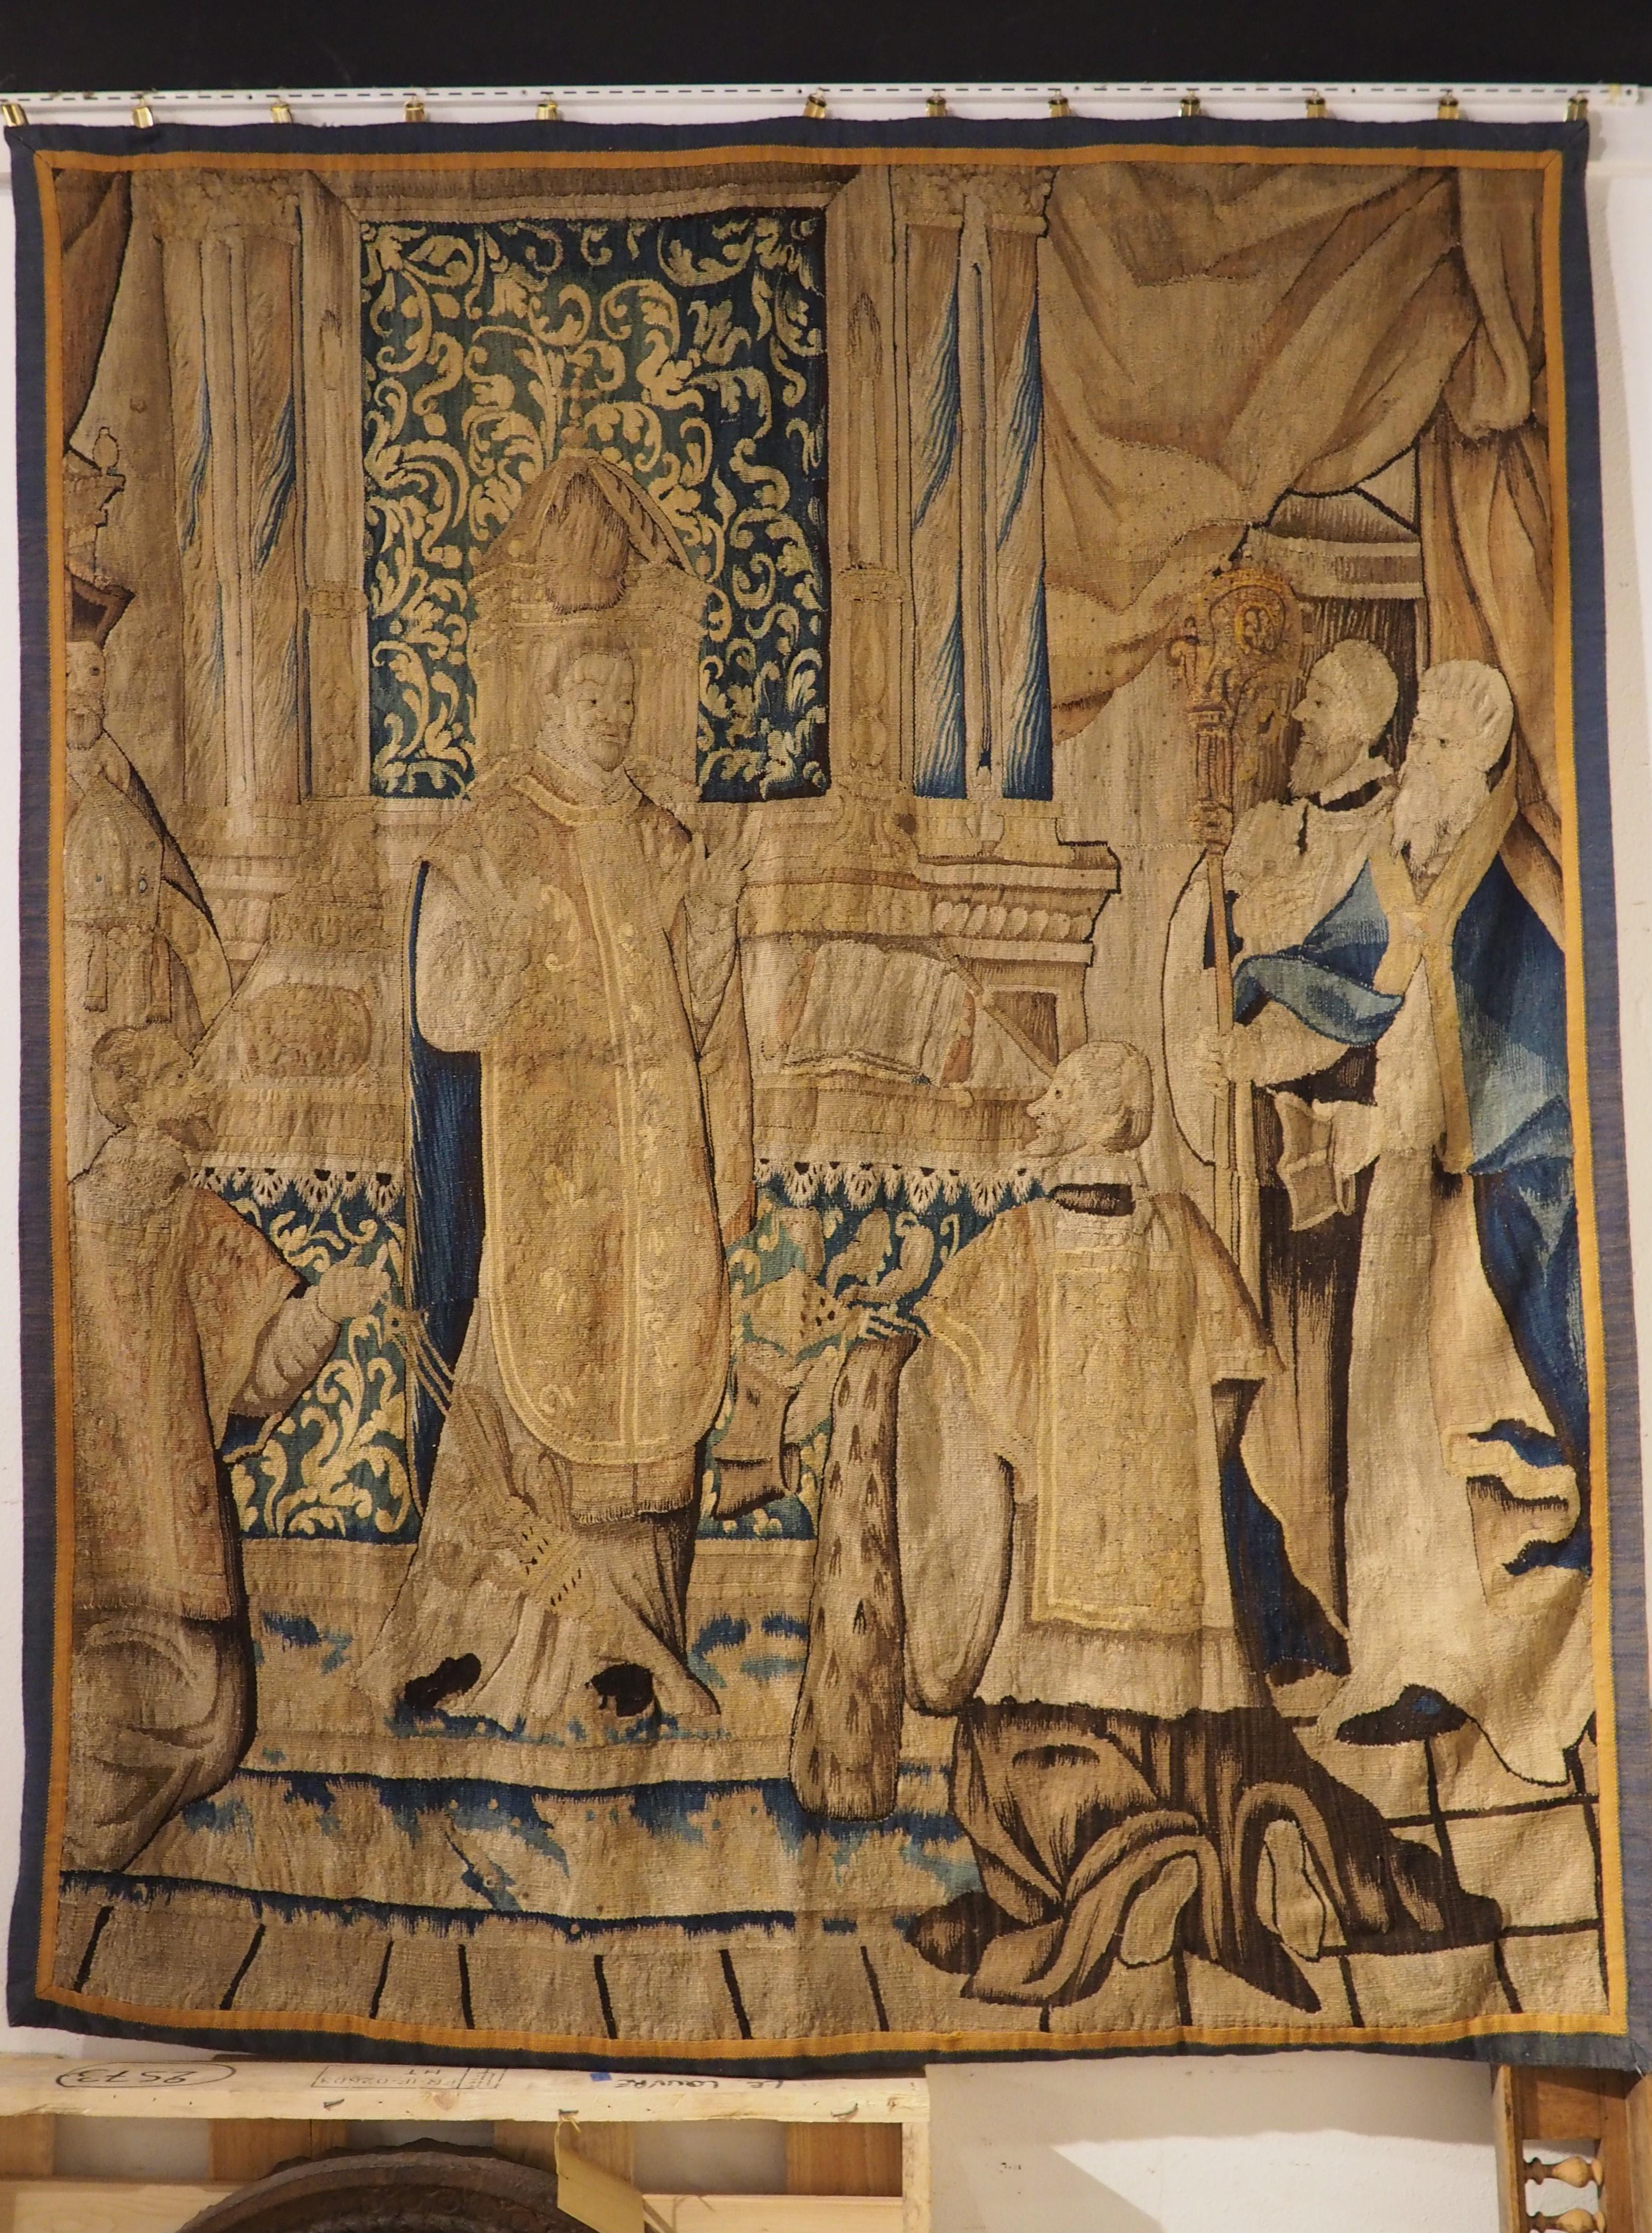 Dieser um 1650 in Brüssel handgewebte Wandteppich aus Wolle und Seide stellt eine Kirchenszene mit sechs Geistlichen vor einem Altar dar. Nach rund 375 Jahren sind die Farben immer noch lebendig, hervorgehoben durch Blautöne, die die überwiegend